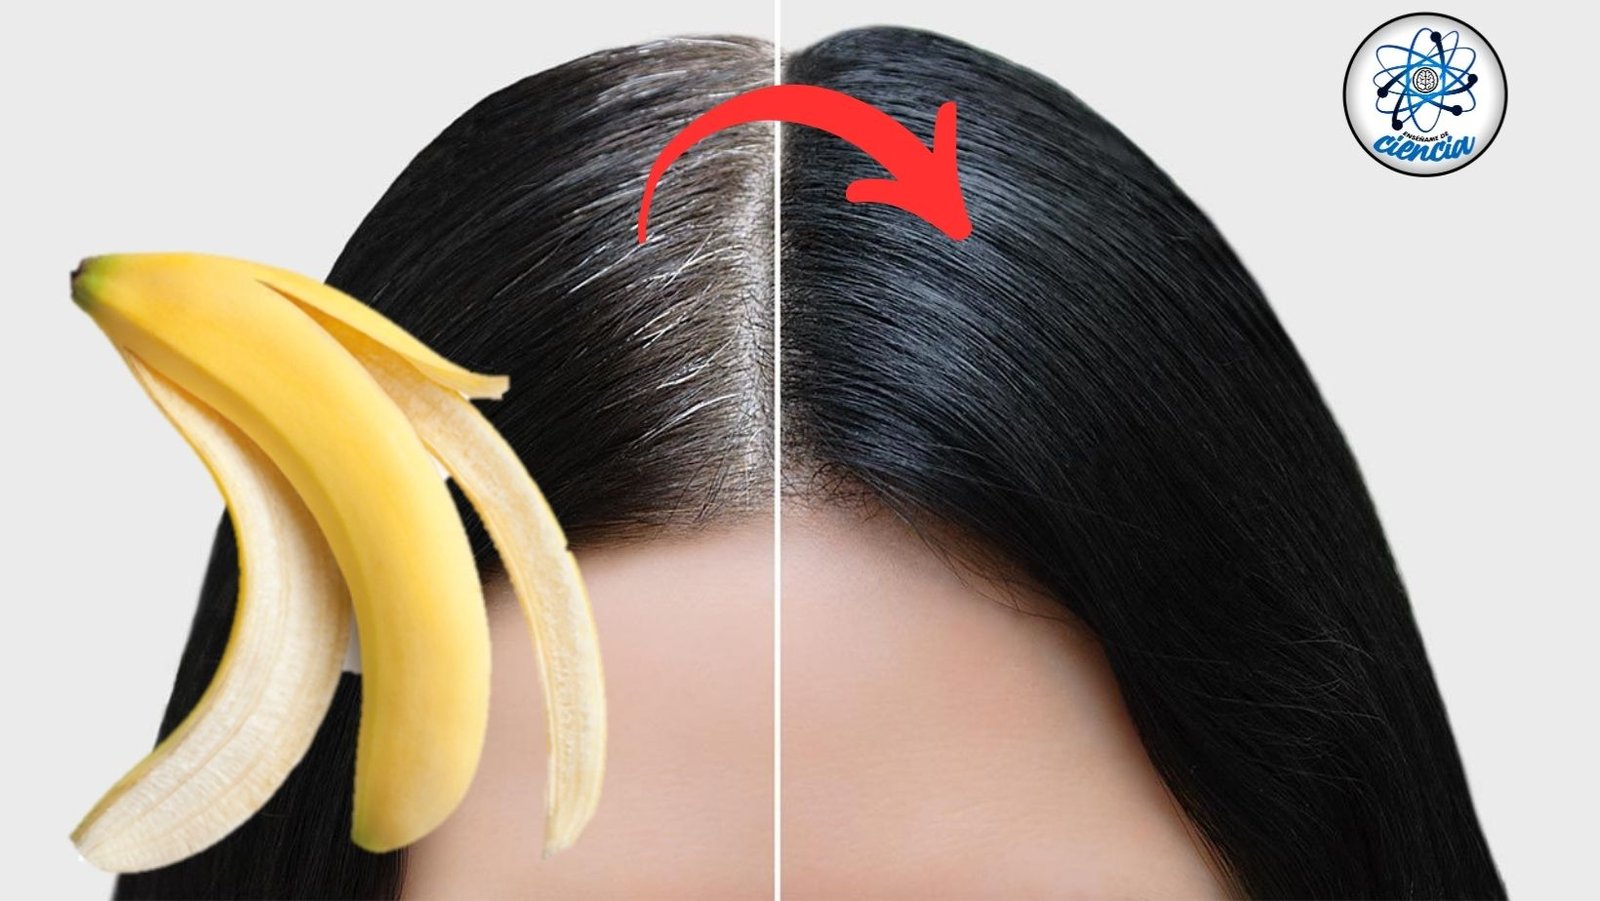 Fórmula secreta de plátano para eliminar canas y rejuvenecer el cabello